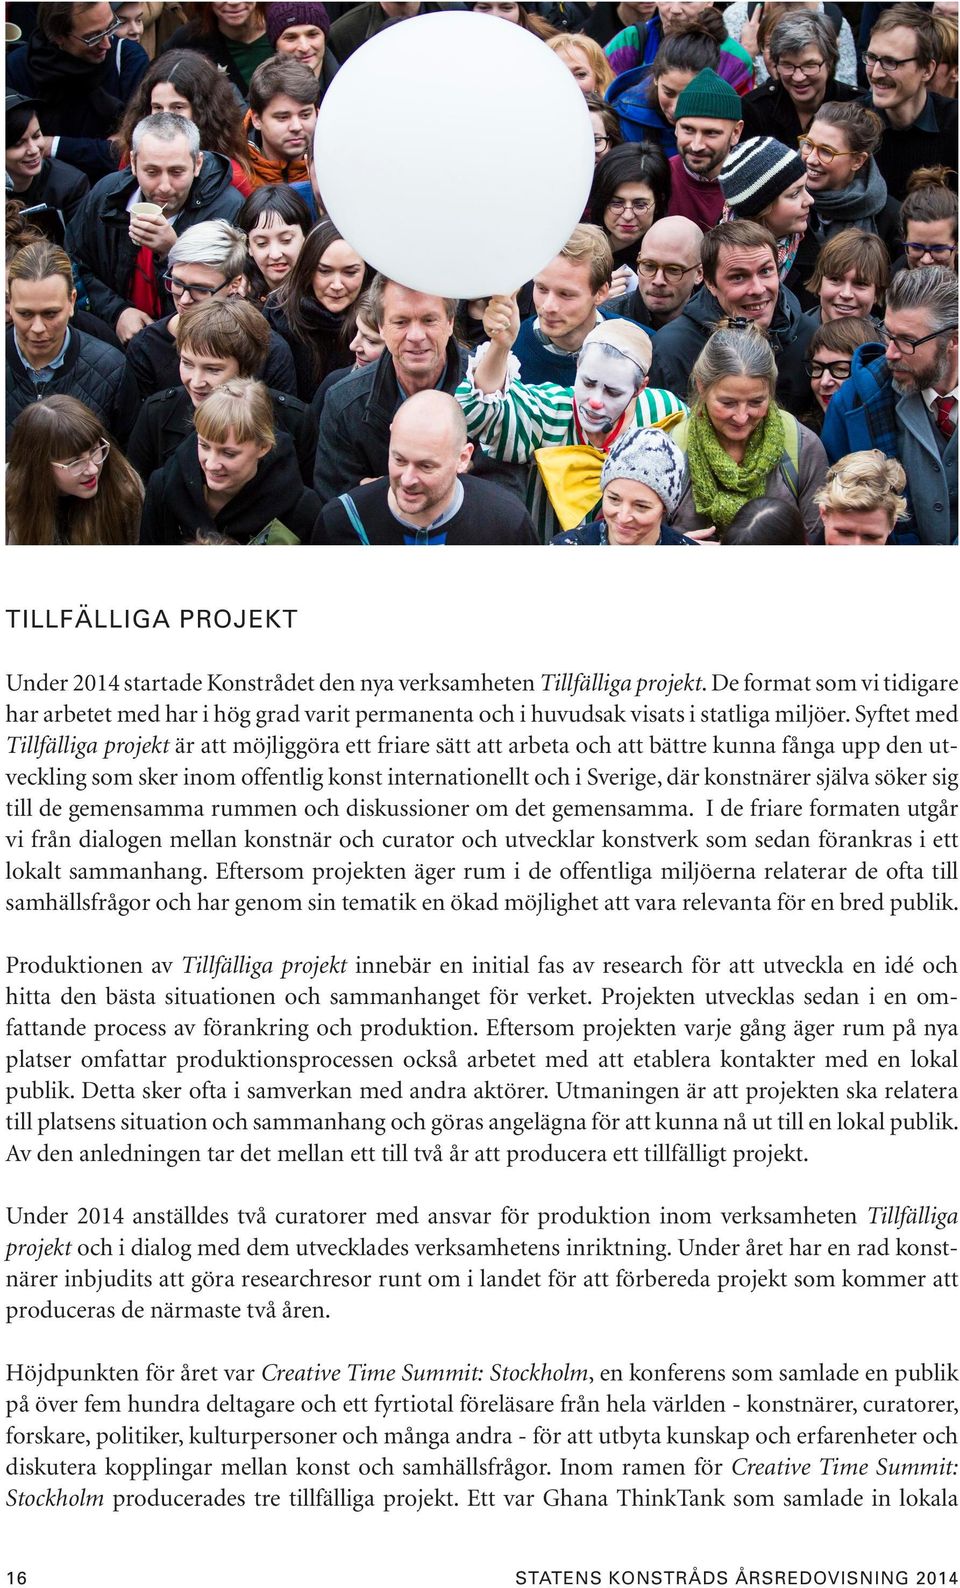 Syftet med Tillfälliga projekt är att möjliggöra ett friare sätt att arbeta och att bättre kunna fånga upp den utveckling som sker inom offentlig konst internationellt och i Sverige, där konstnärer